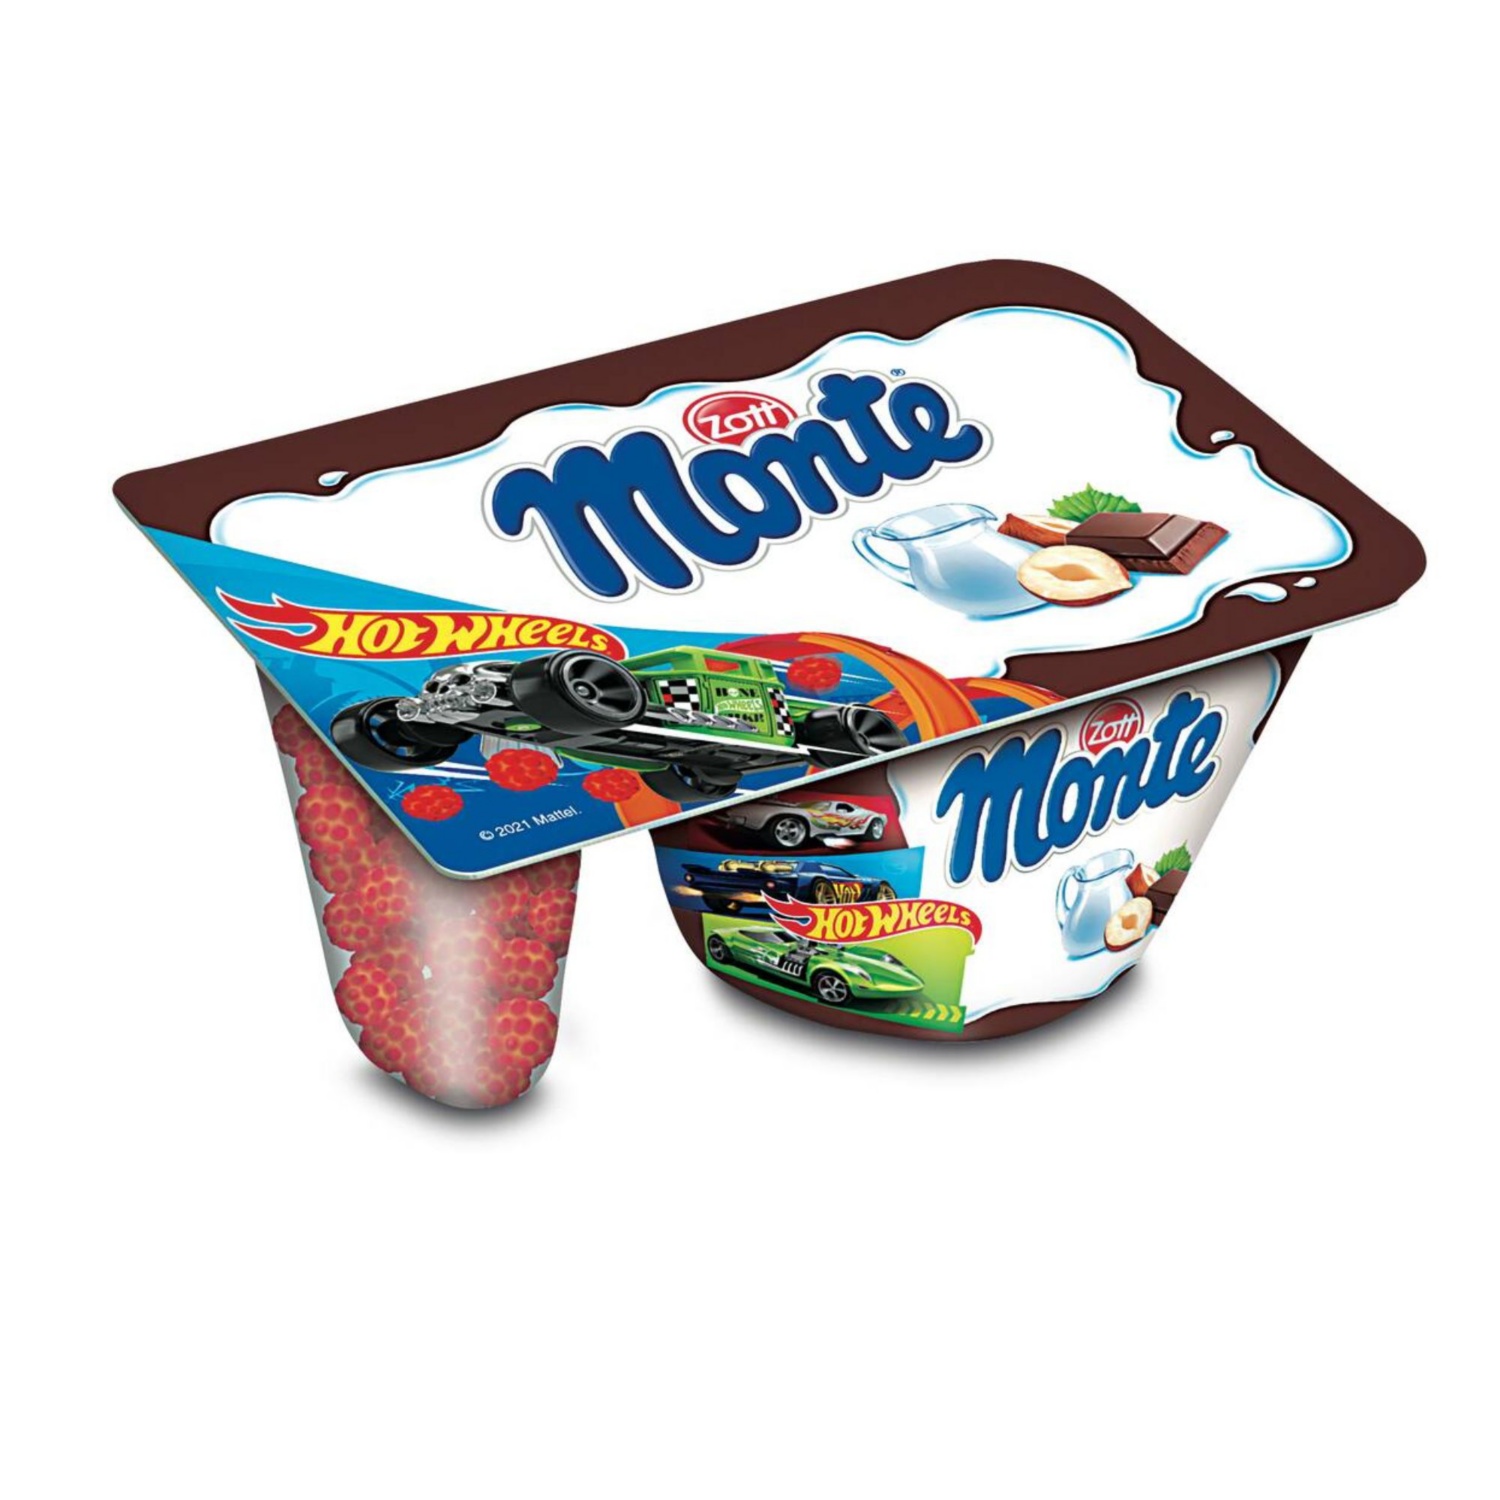 MONTE Monte mix, Hot Wheels